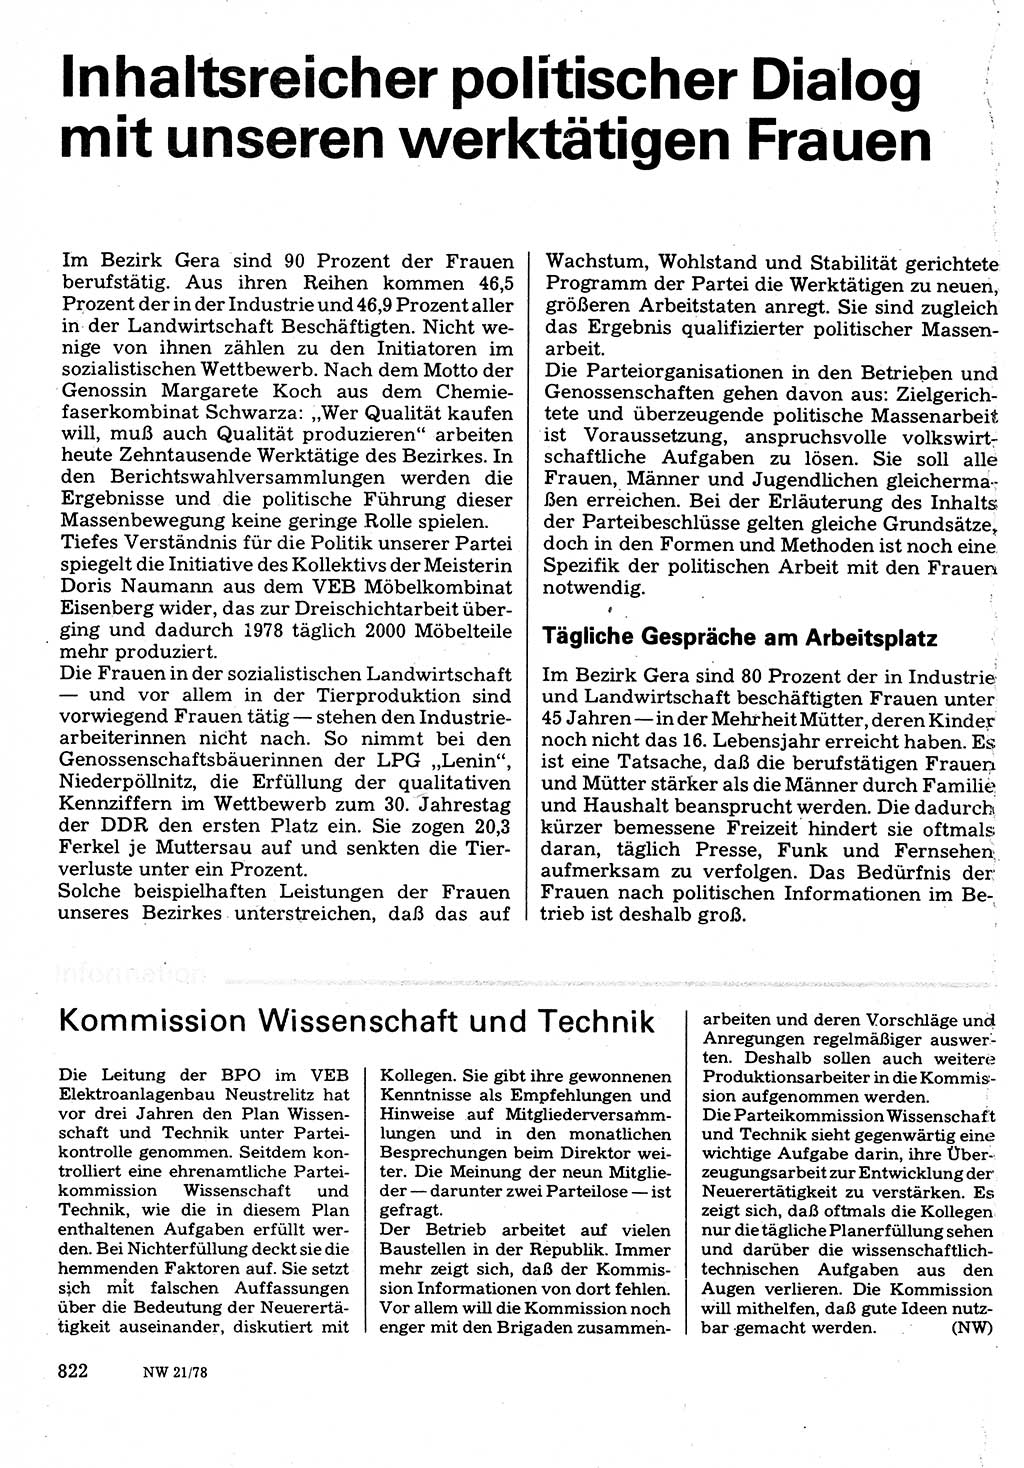 Neuer Weg (NW), Organ des Zentralkomitees (ZK) der SED (Sozialistische Einheitspartei Deutschlands) für Fragen des Parteilebens, 33. Jahrgang [Deutsche Demokratische Republik (DDR)] 1978, Seite 822 (NW ZK SED DDR 1978, S. 822)